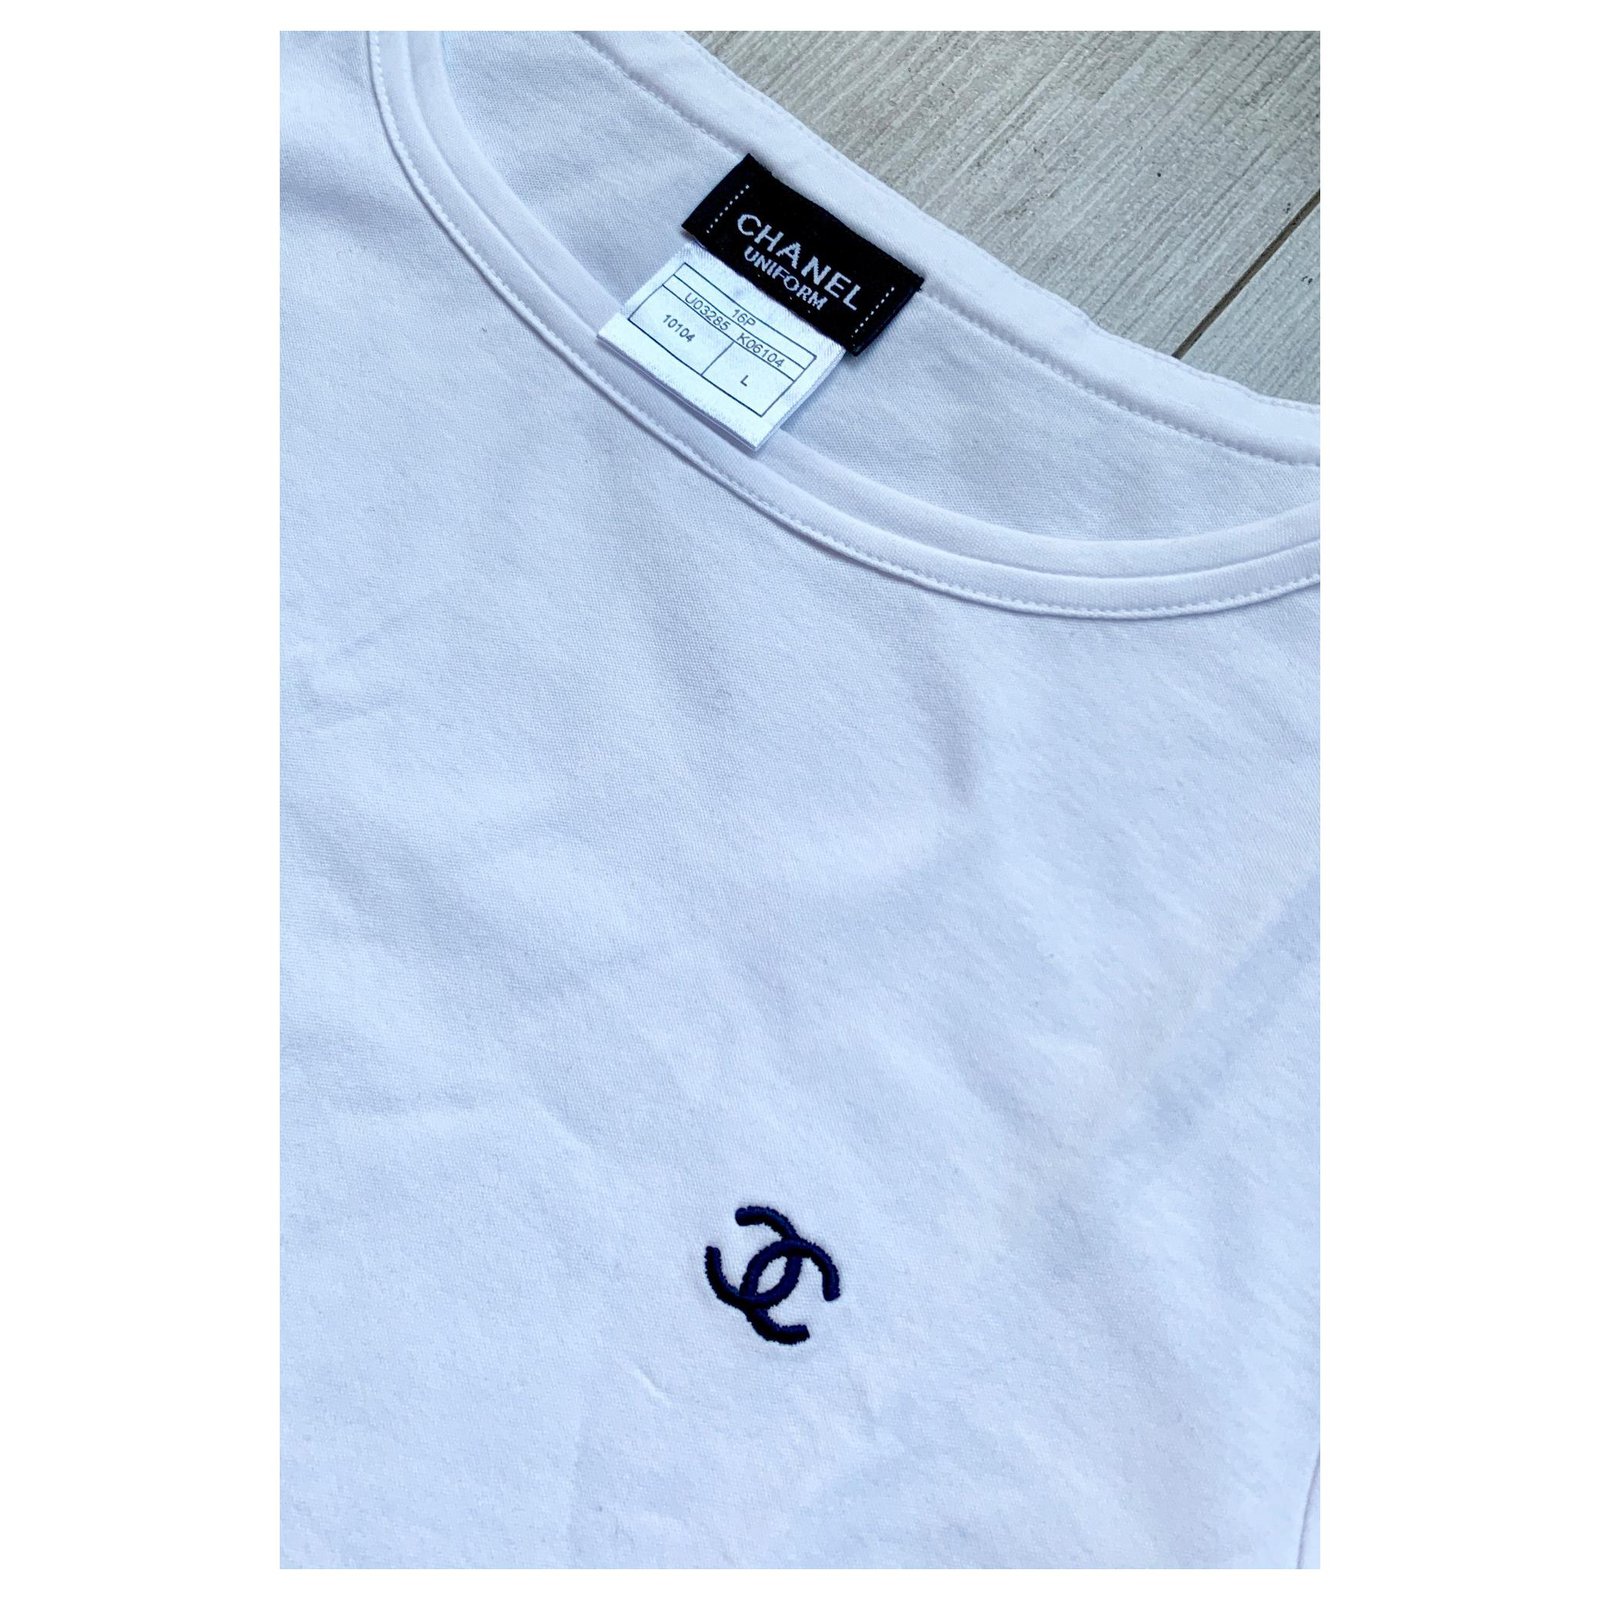 Chanel white tshirt